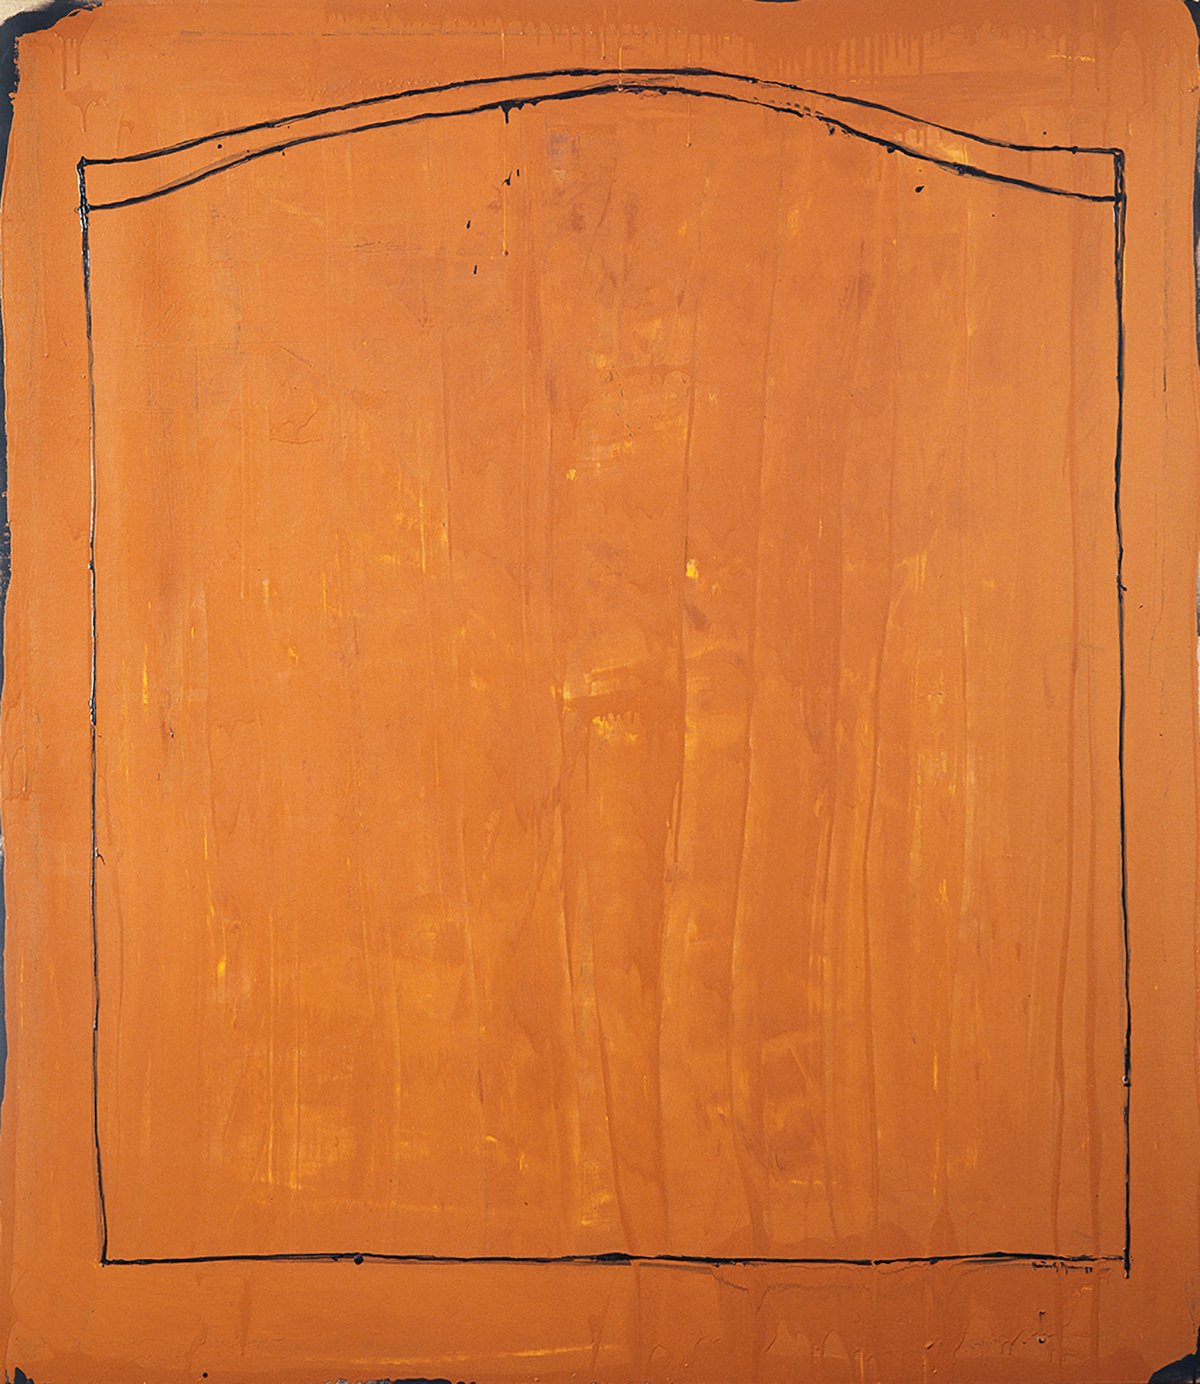   “El camp des de la finestra” , 1987 Óleo sobre tela (192 x 168 cm.) 